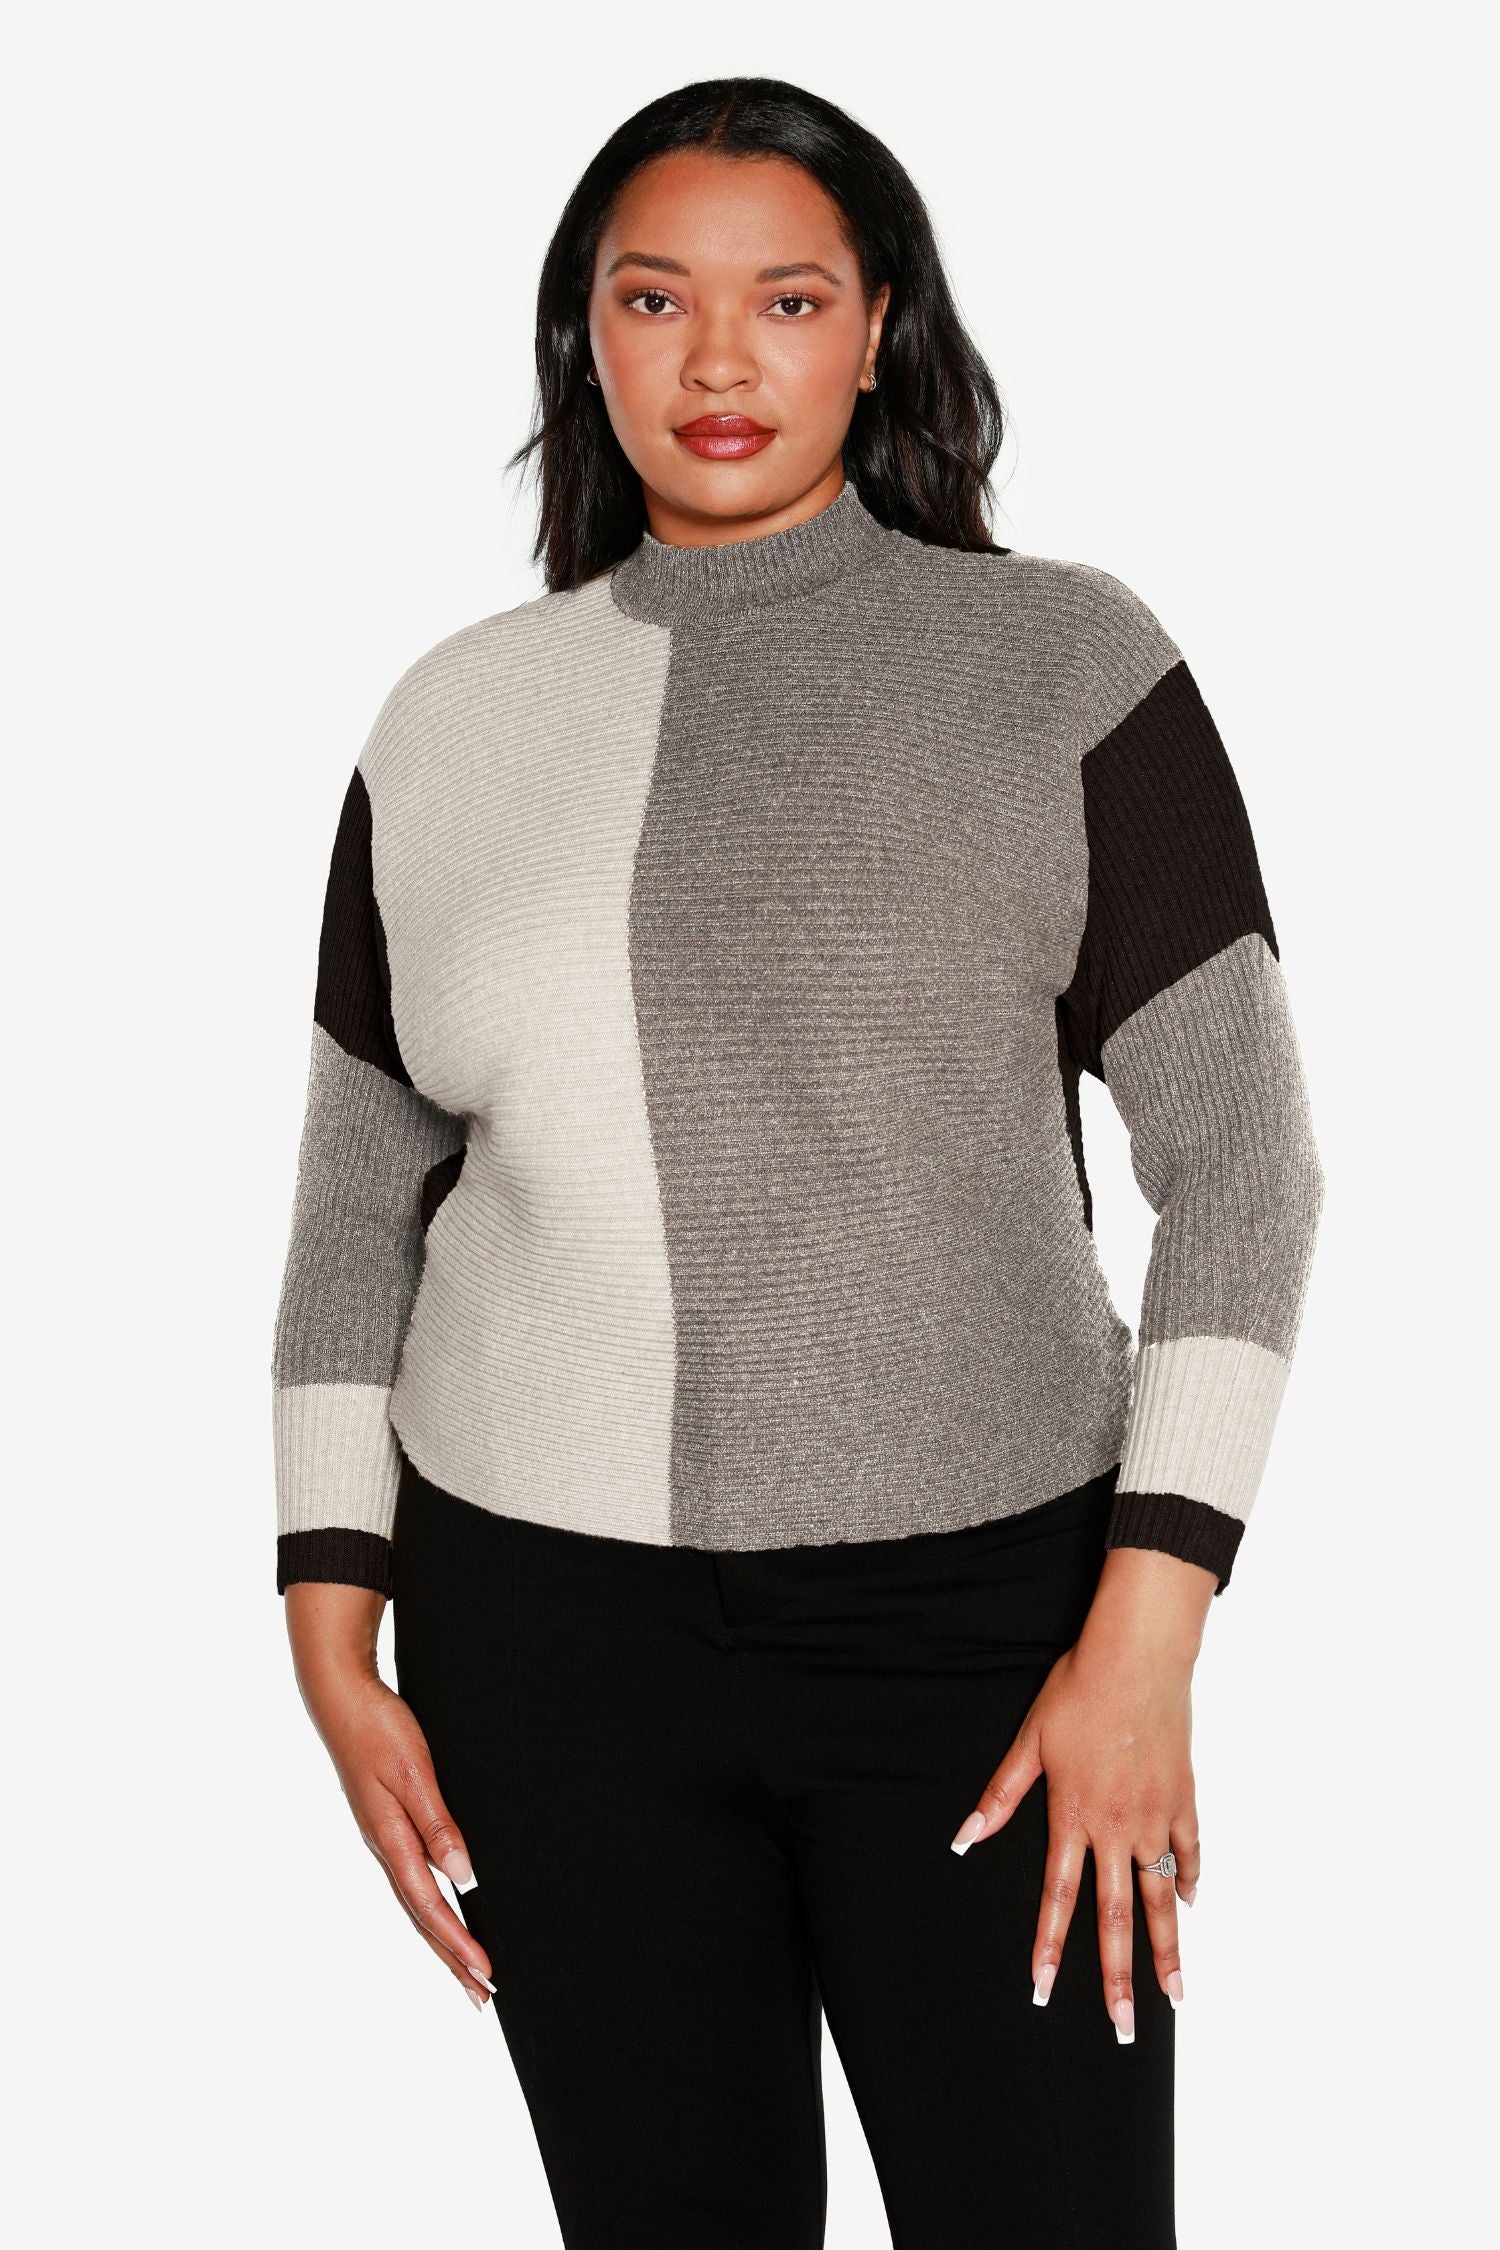 Jersey tipo pulóver para mujer en suave tejido de minicanalé con bloques de color y cuello simulado | con curvas